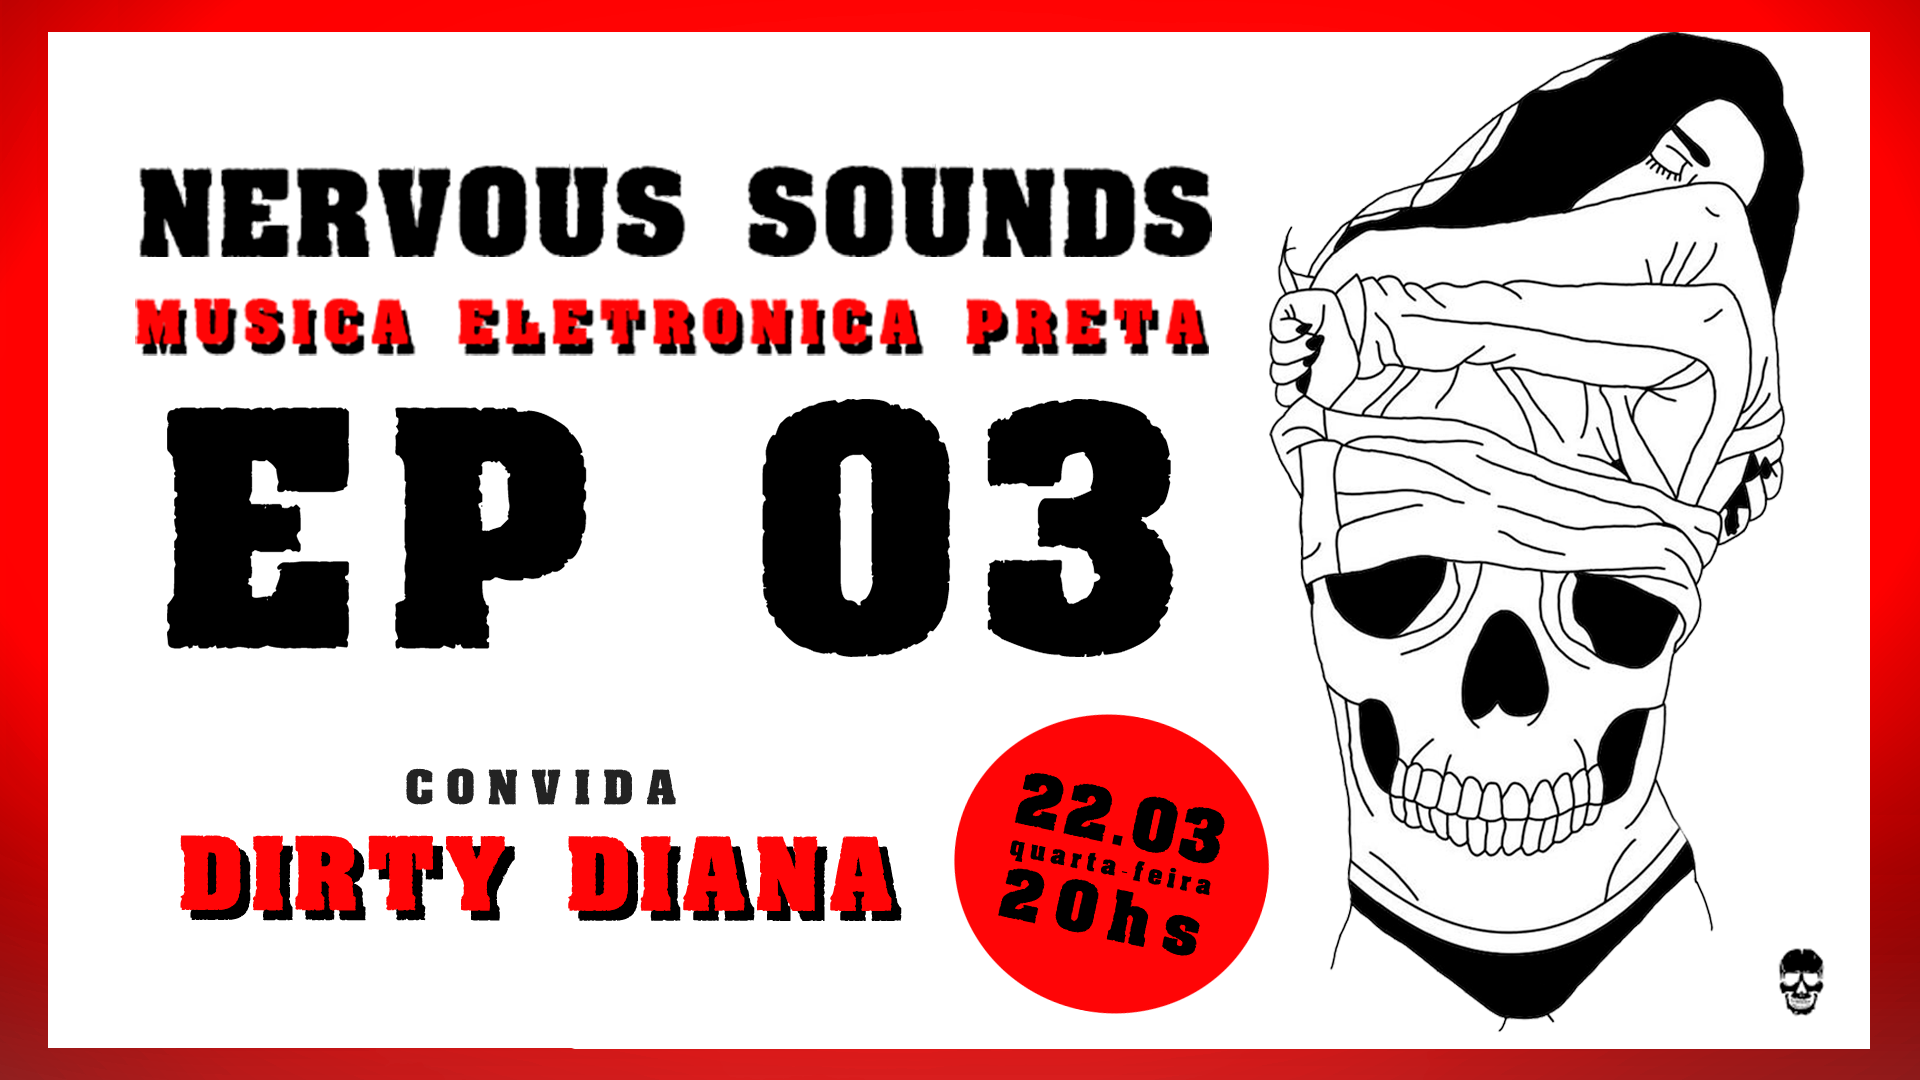 NERVOUS SOUNDS – Dirty Diana